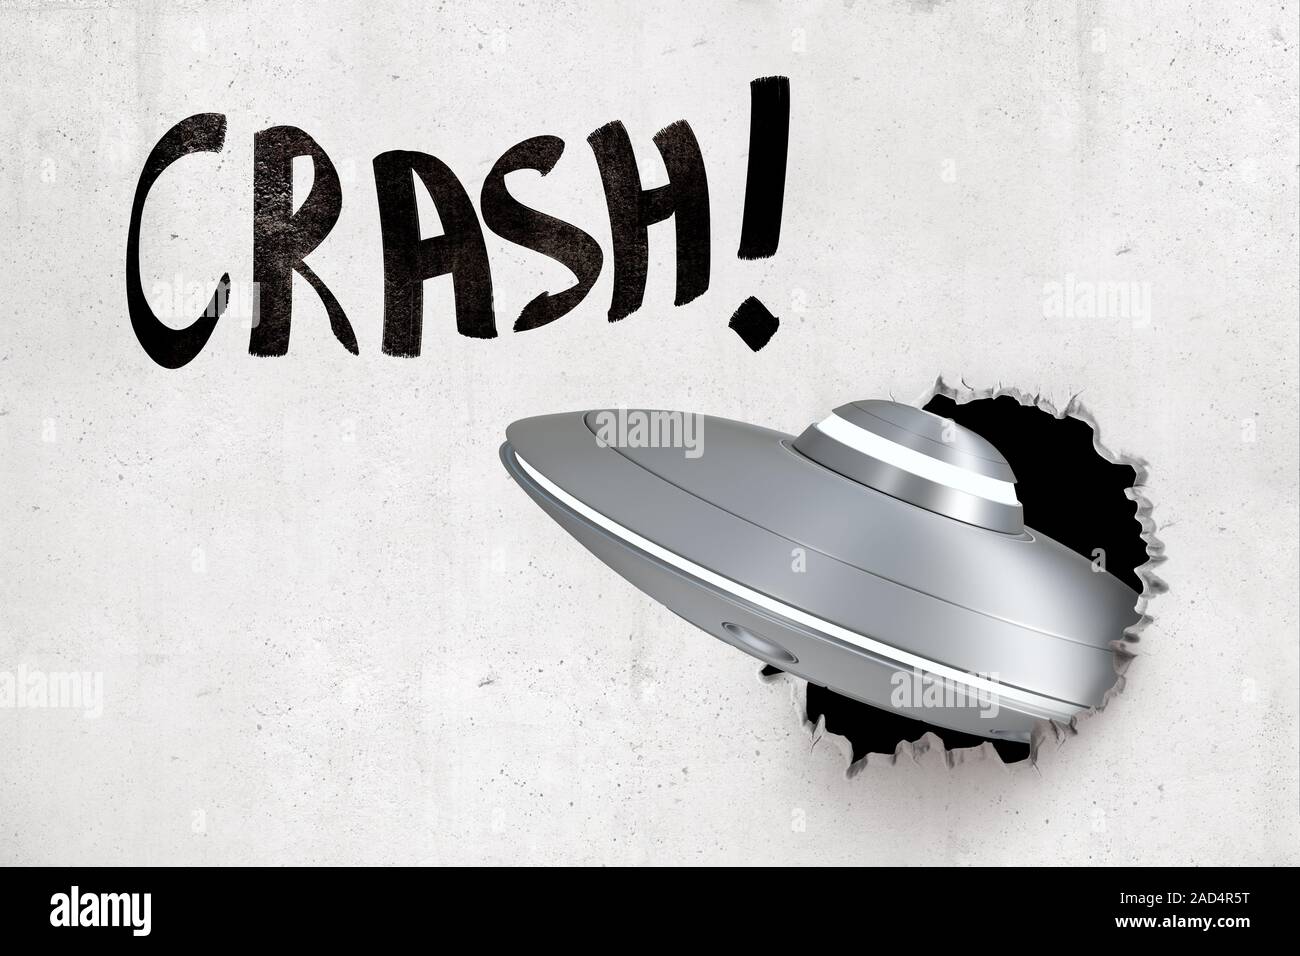 Representación 3D de metal plateado OVNI romper paredes blancas con negro "Crash" signo de arriba. La ciencia ficción. La vida extraterrestre. La tecnología espacial. Foto de stock